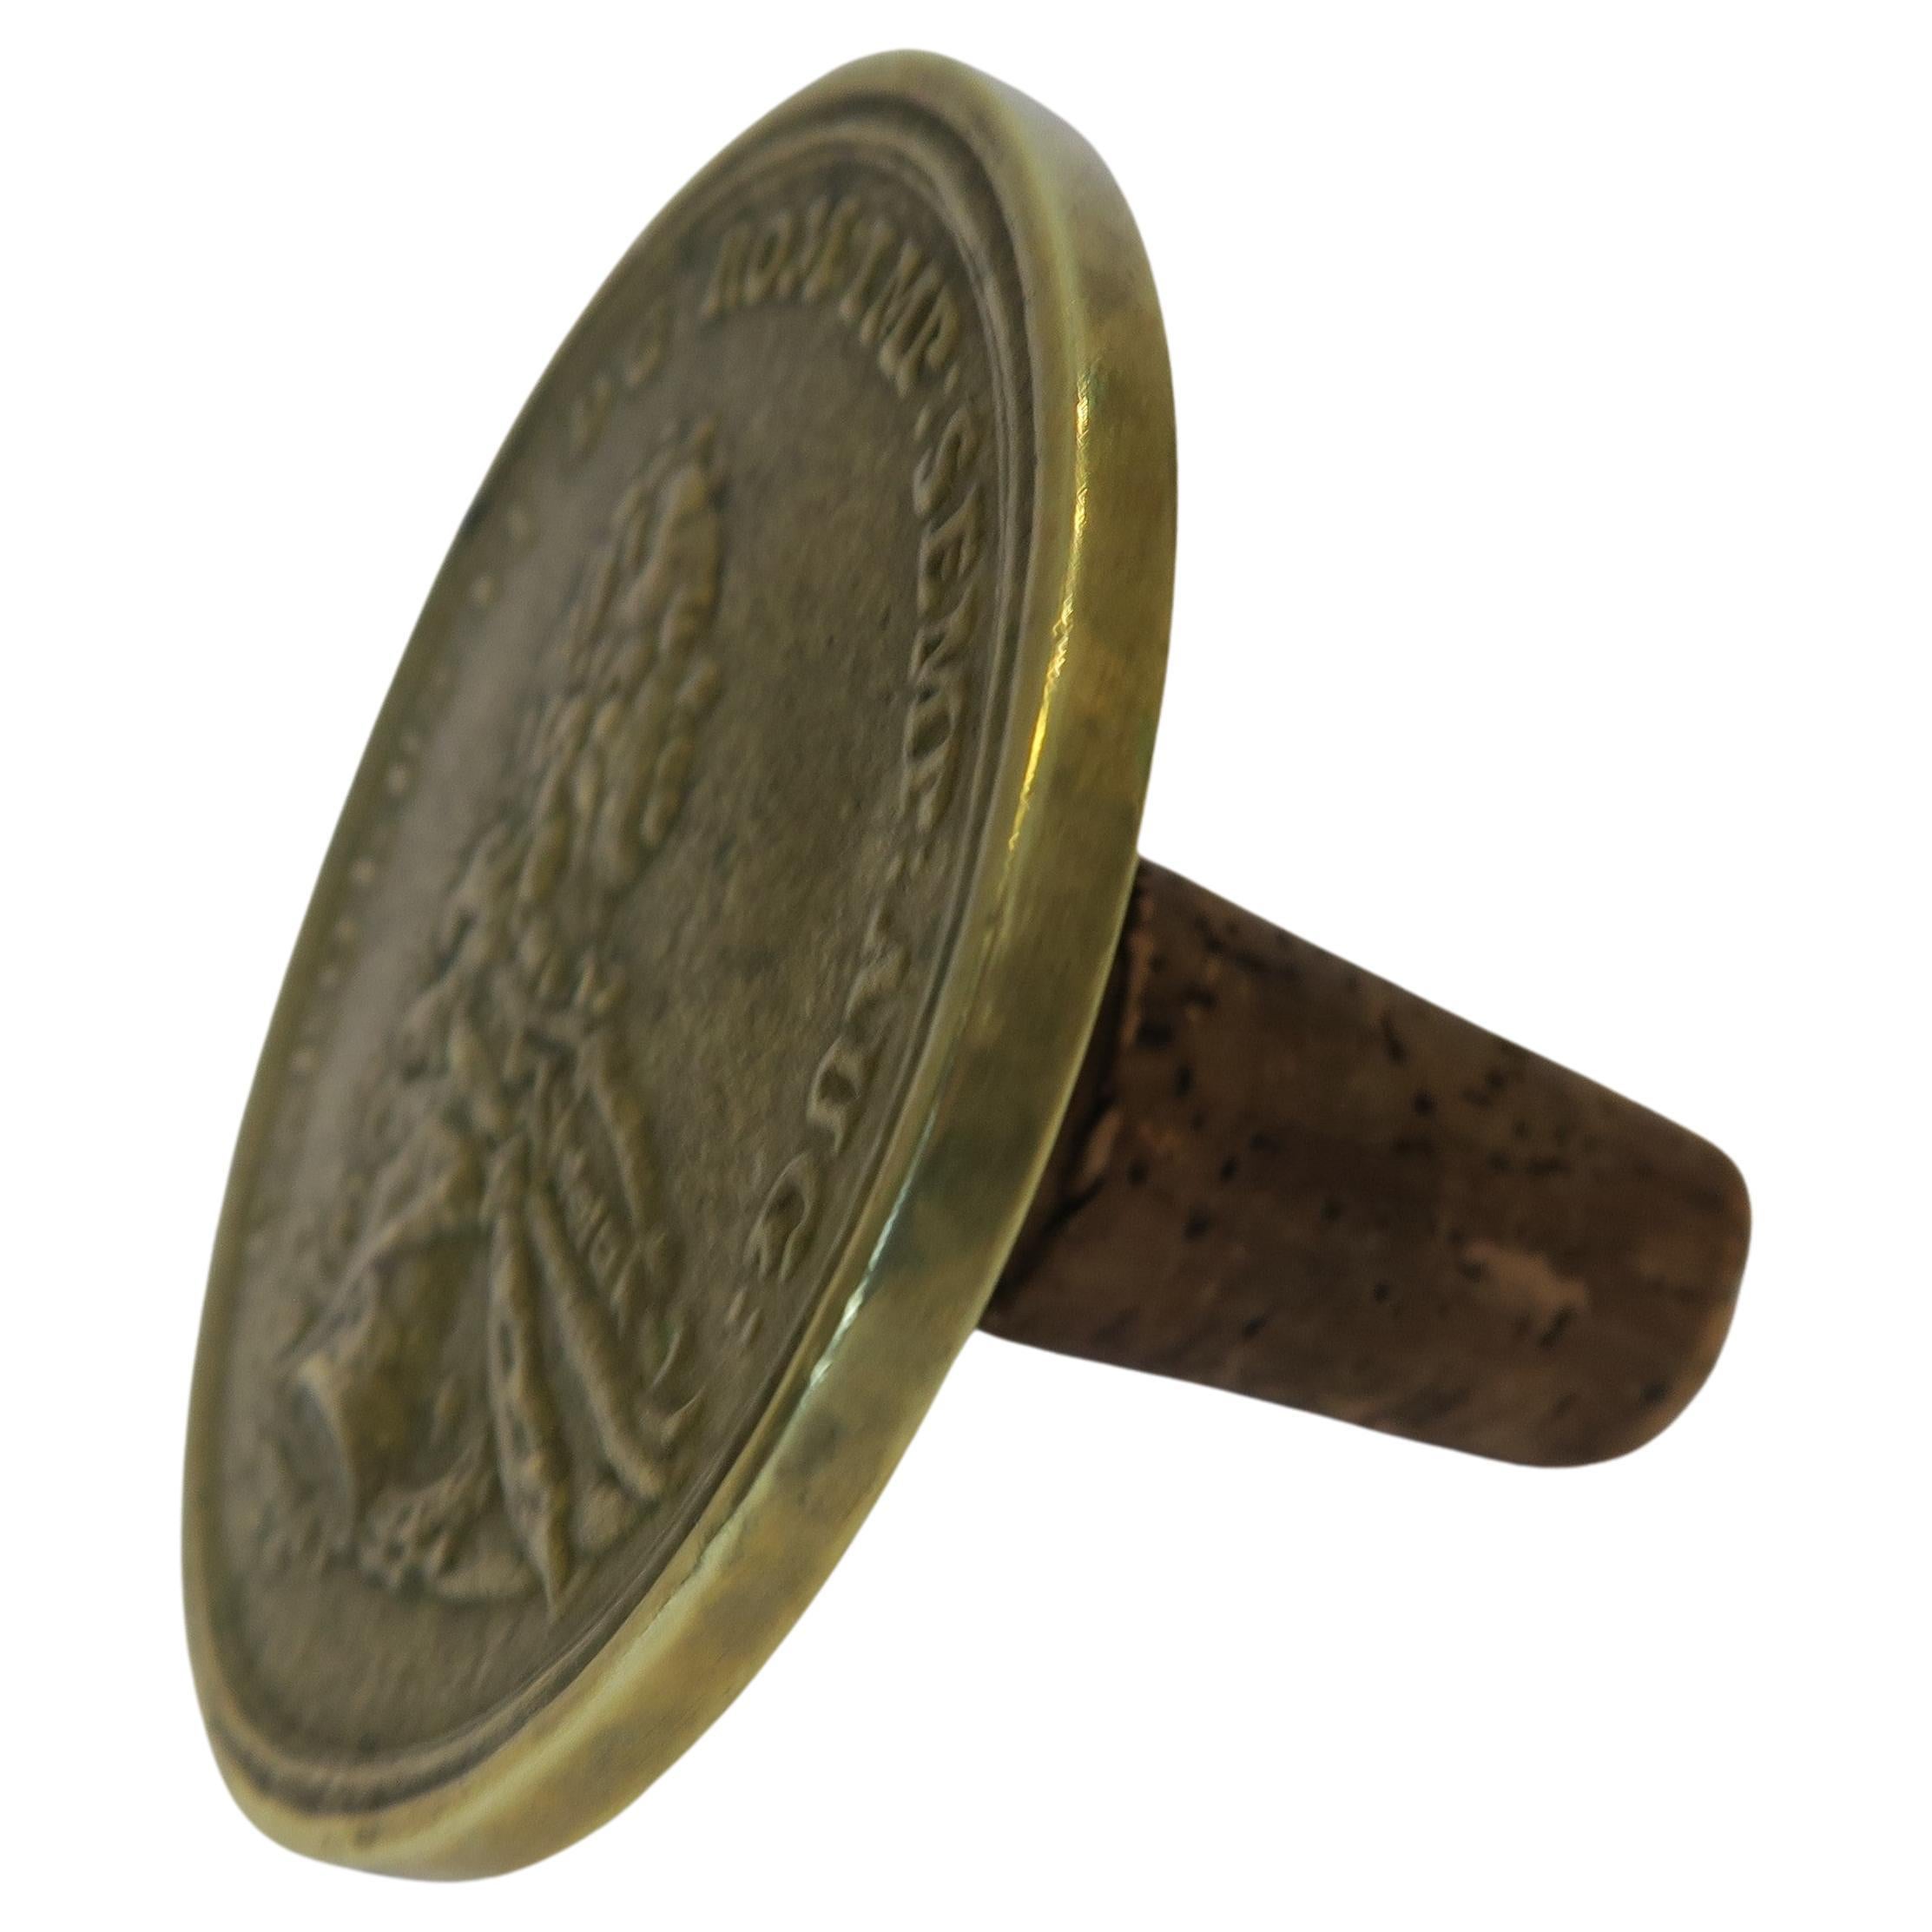 Midcentury Auböck Bottle Stopper Historical Coin Motive